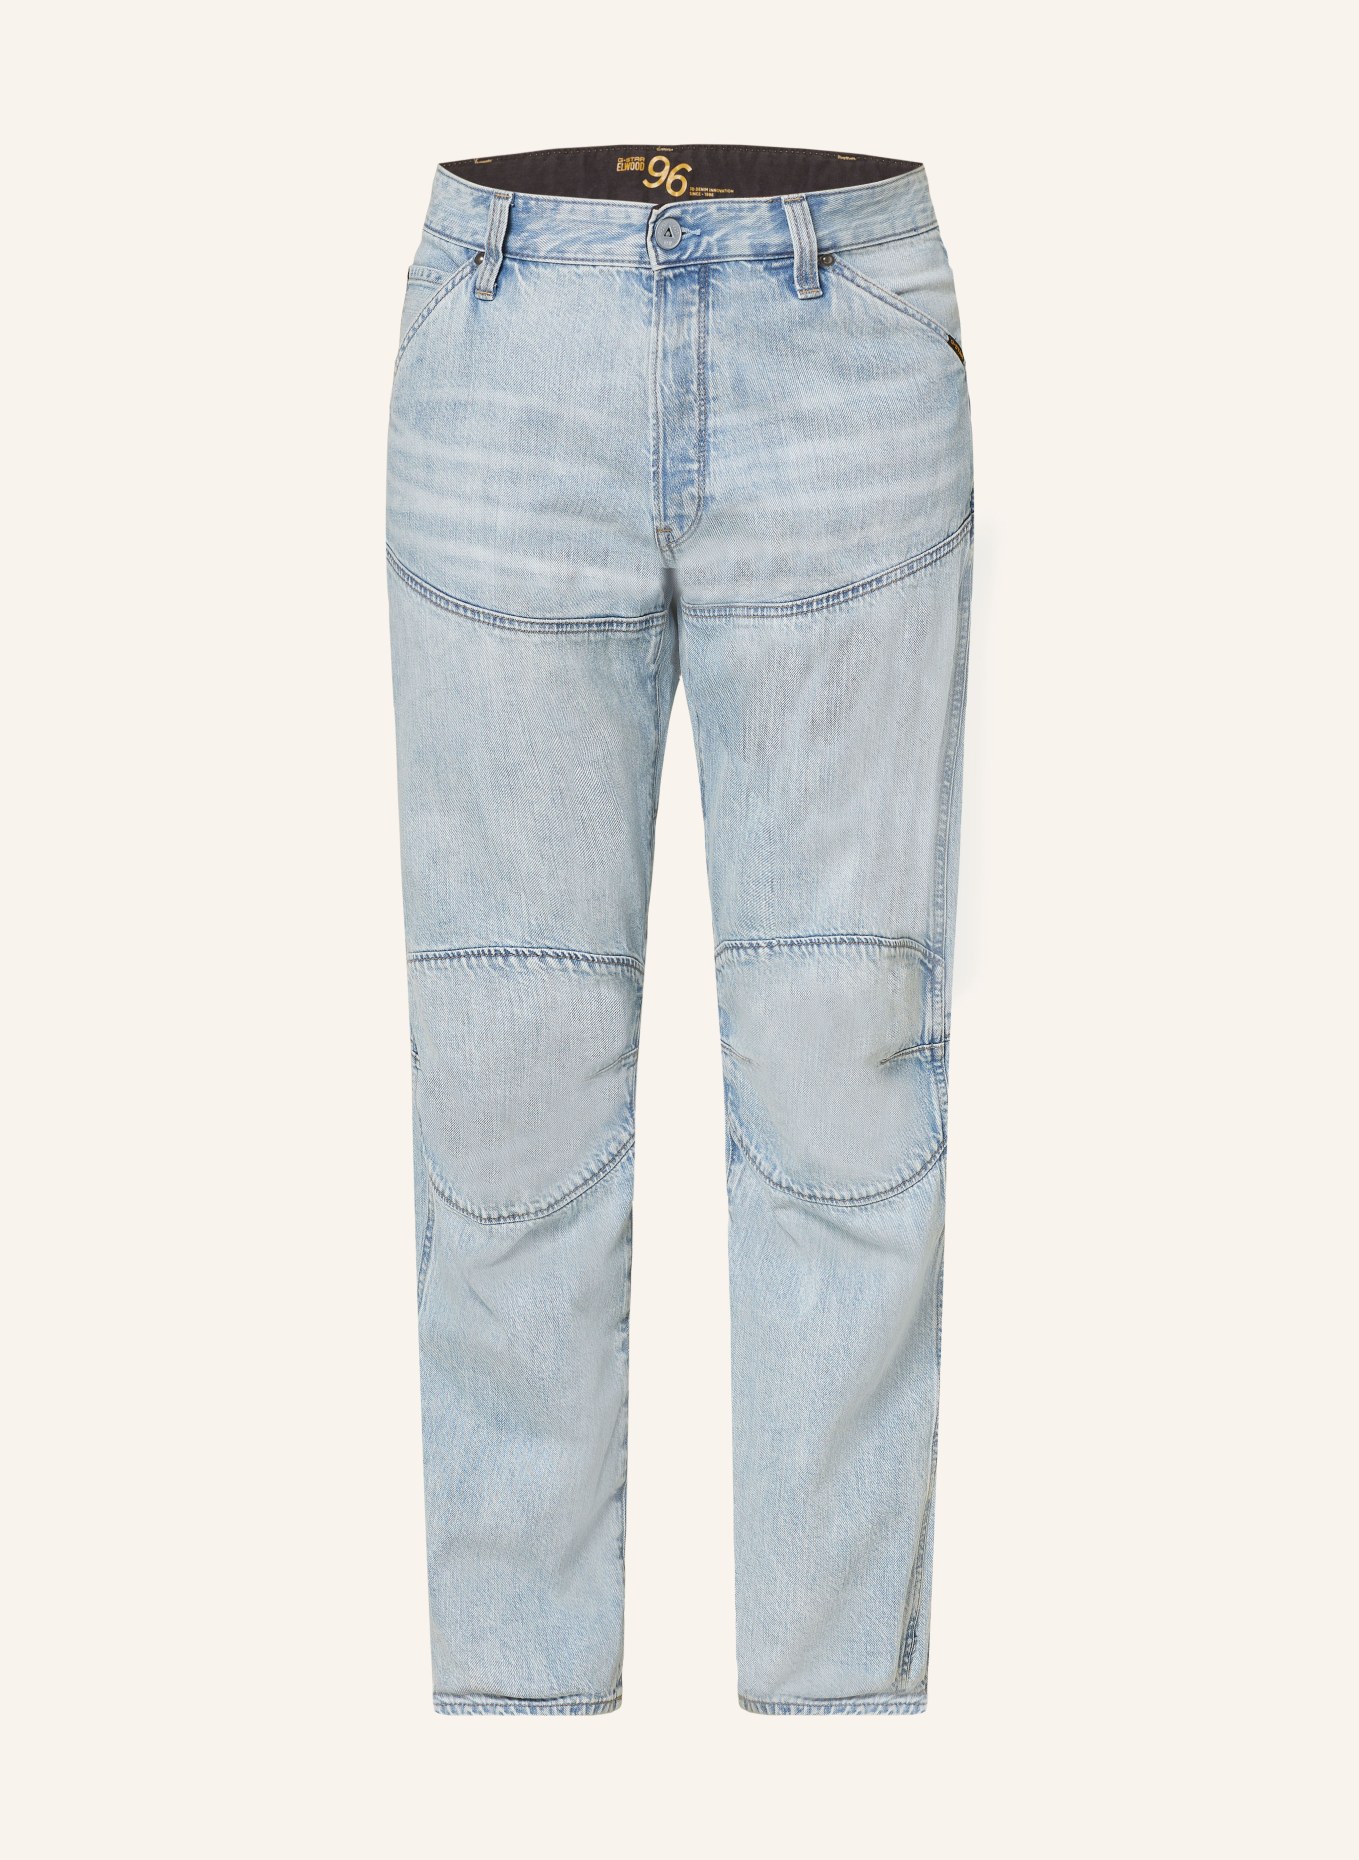 G-Star RAW Jeans 5620 3D Regular Fit, Farbe: G339 sun faded cloudburst (Bild 1)